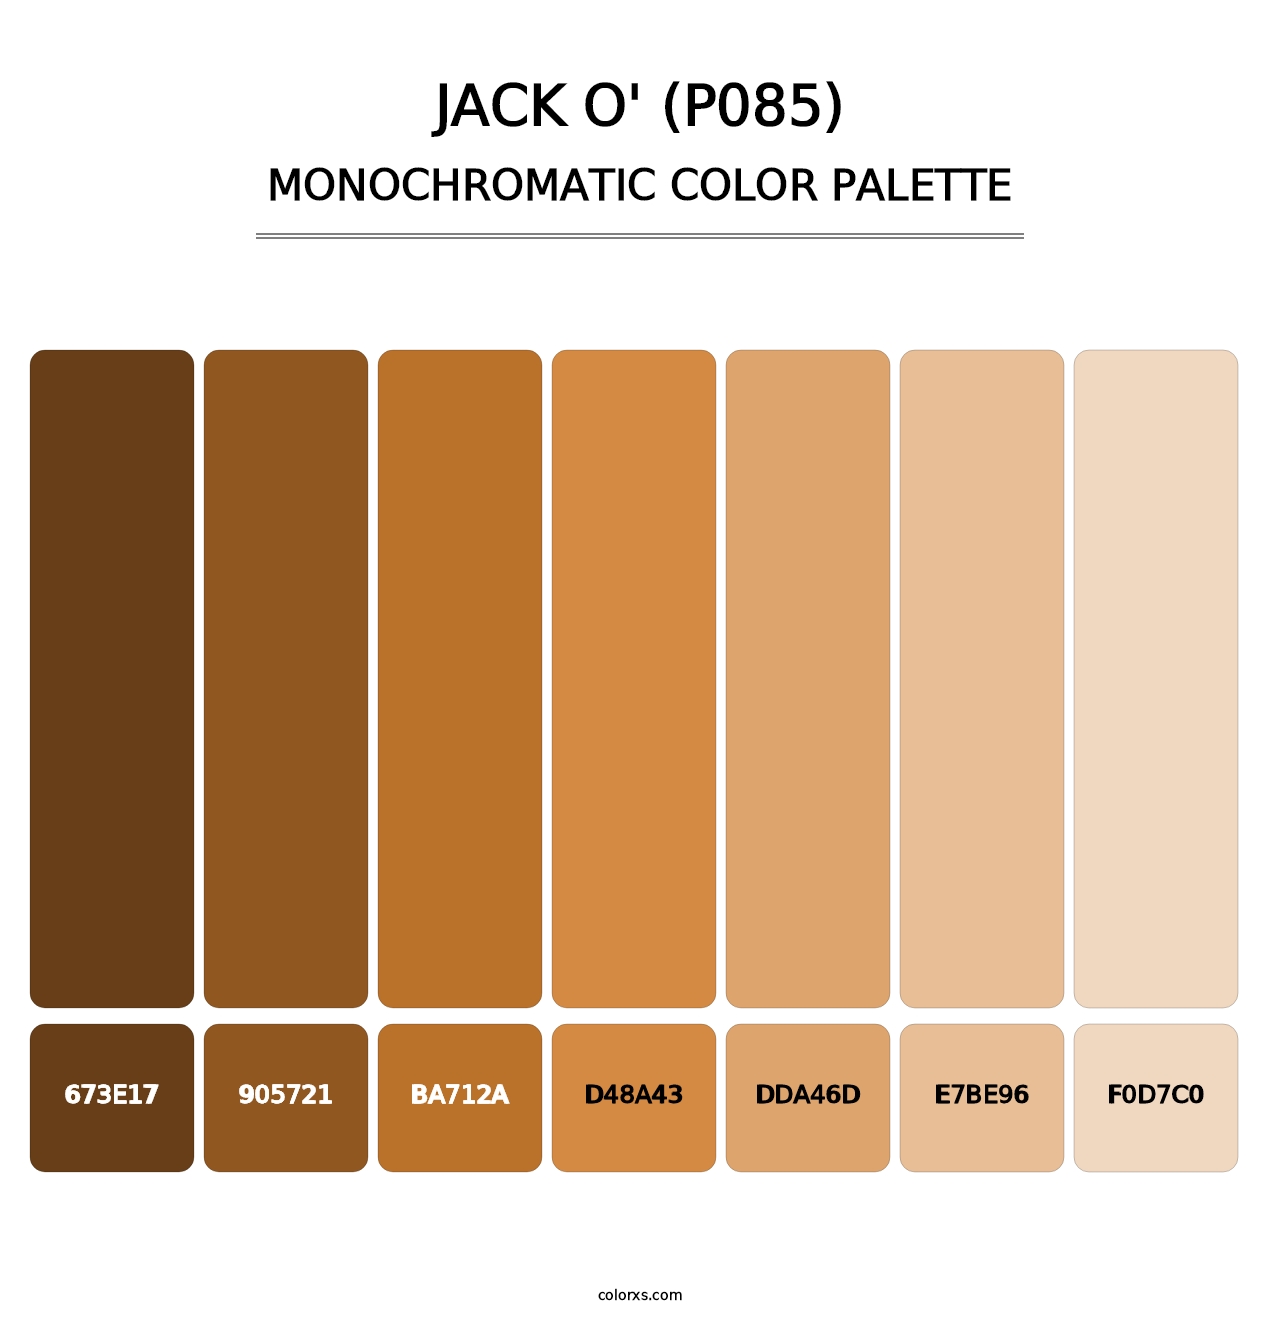 Jack O' (P085) - Monochromatic Color Palette